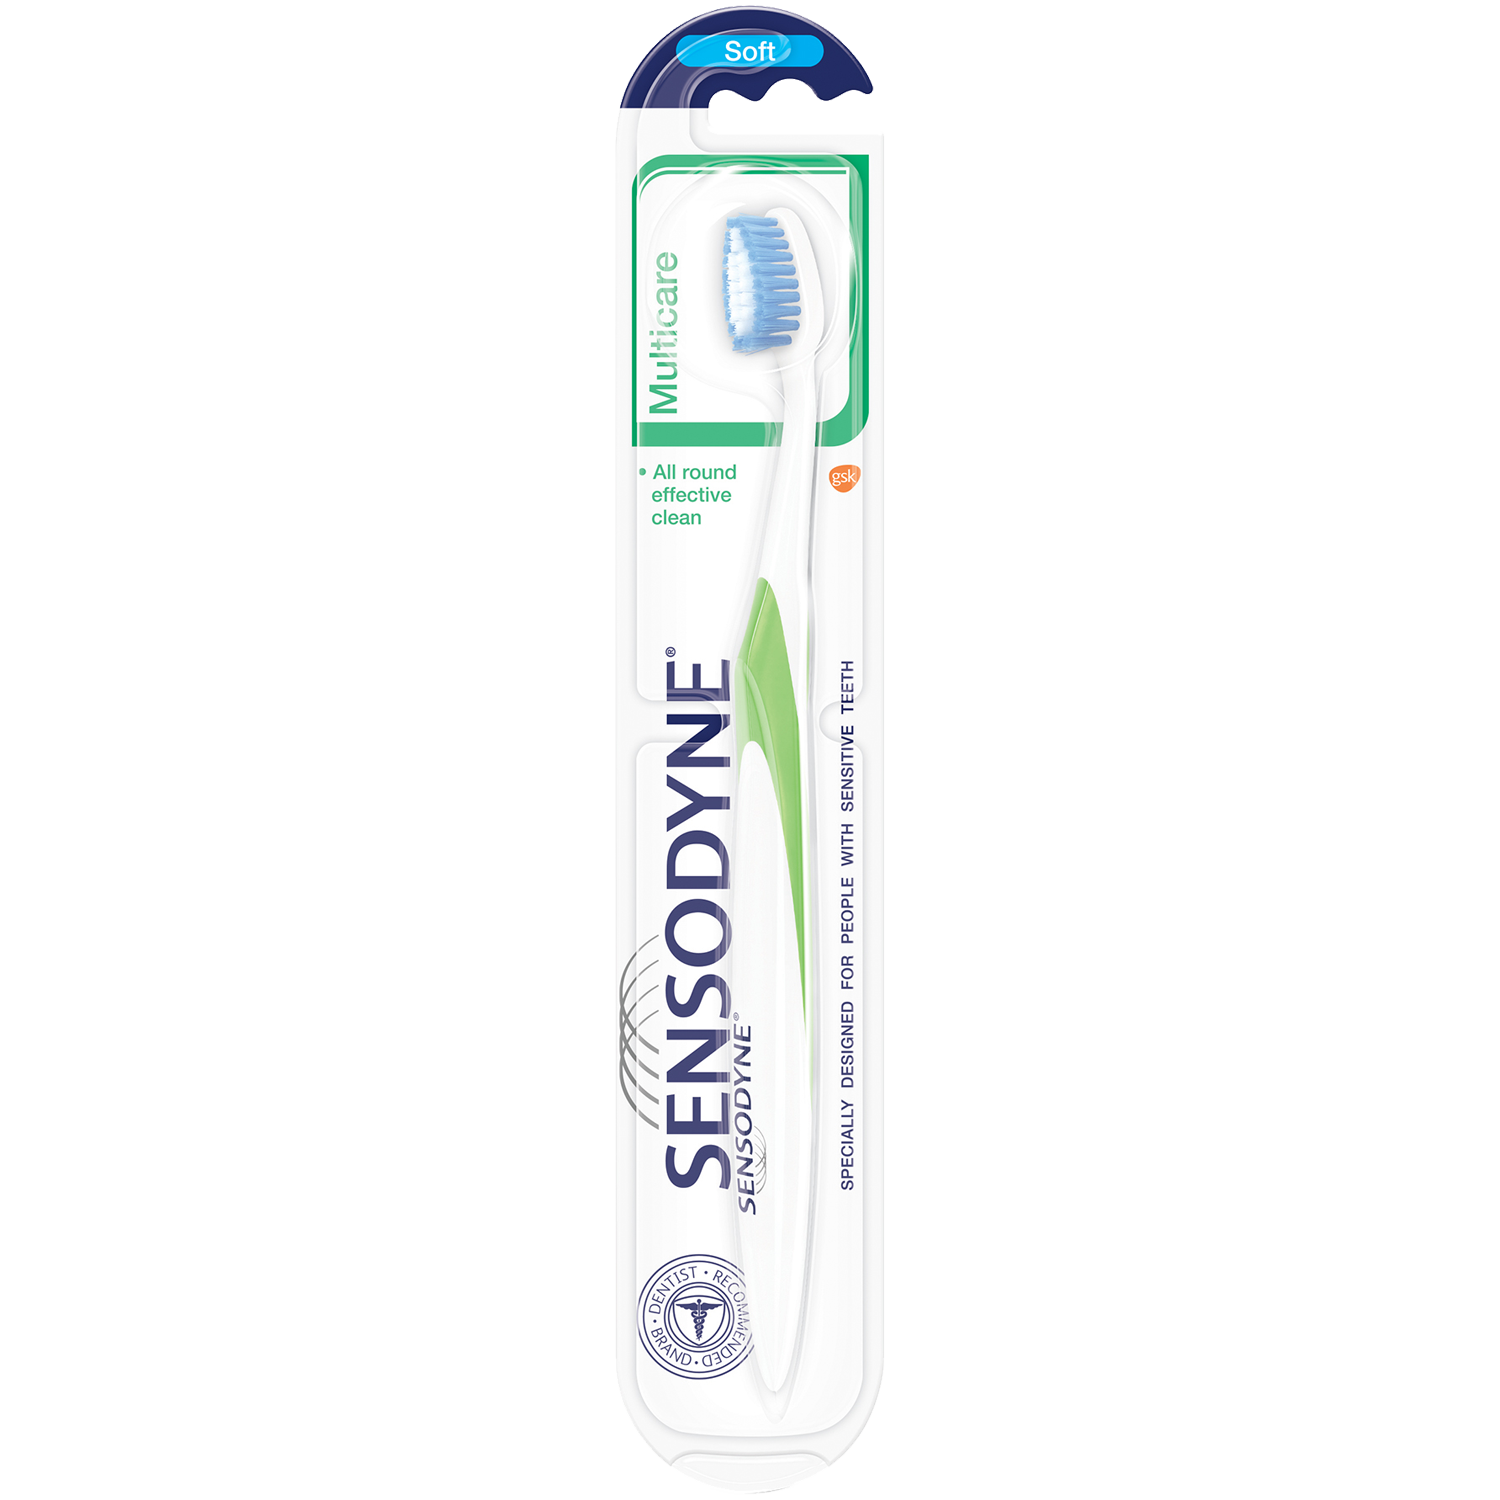 Sensodyne MultiCare зубная щетка мягкая, 1 шт. цена и фото